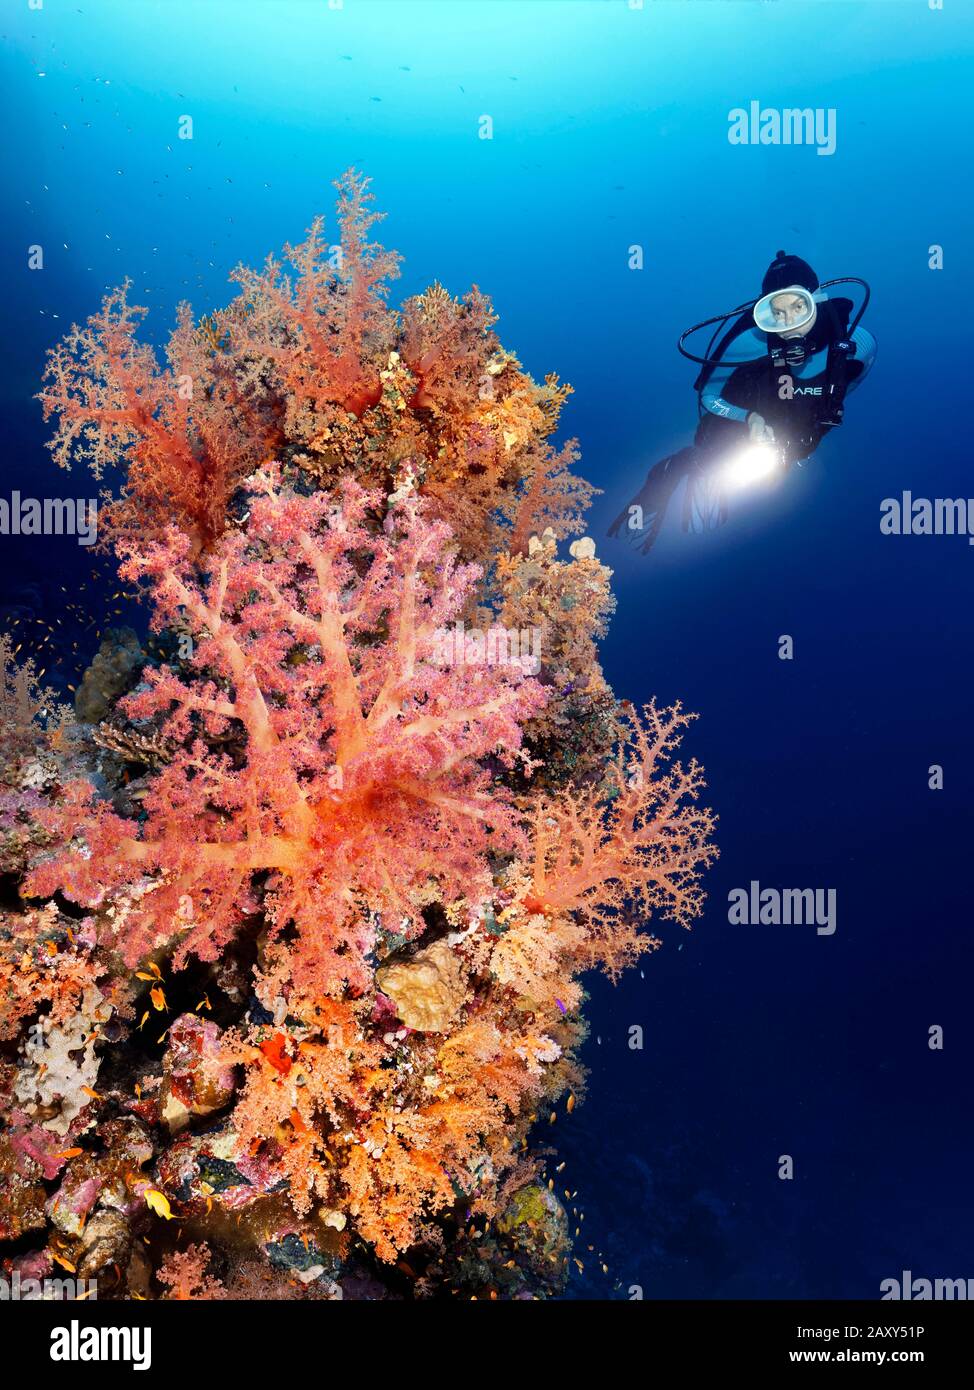 Taucher mit Lampe, die Korallenriffe dicht bedeckt mit verschiedenen steinigen Korallen (Scleractinia) und weichen Korallen (Alcyonacea), Strait of Tiran, Sinai, betrachtet Stockfoto